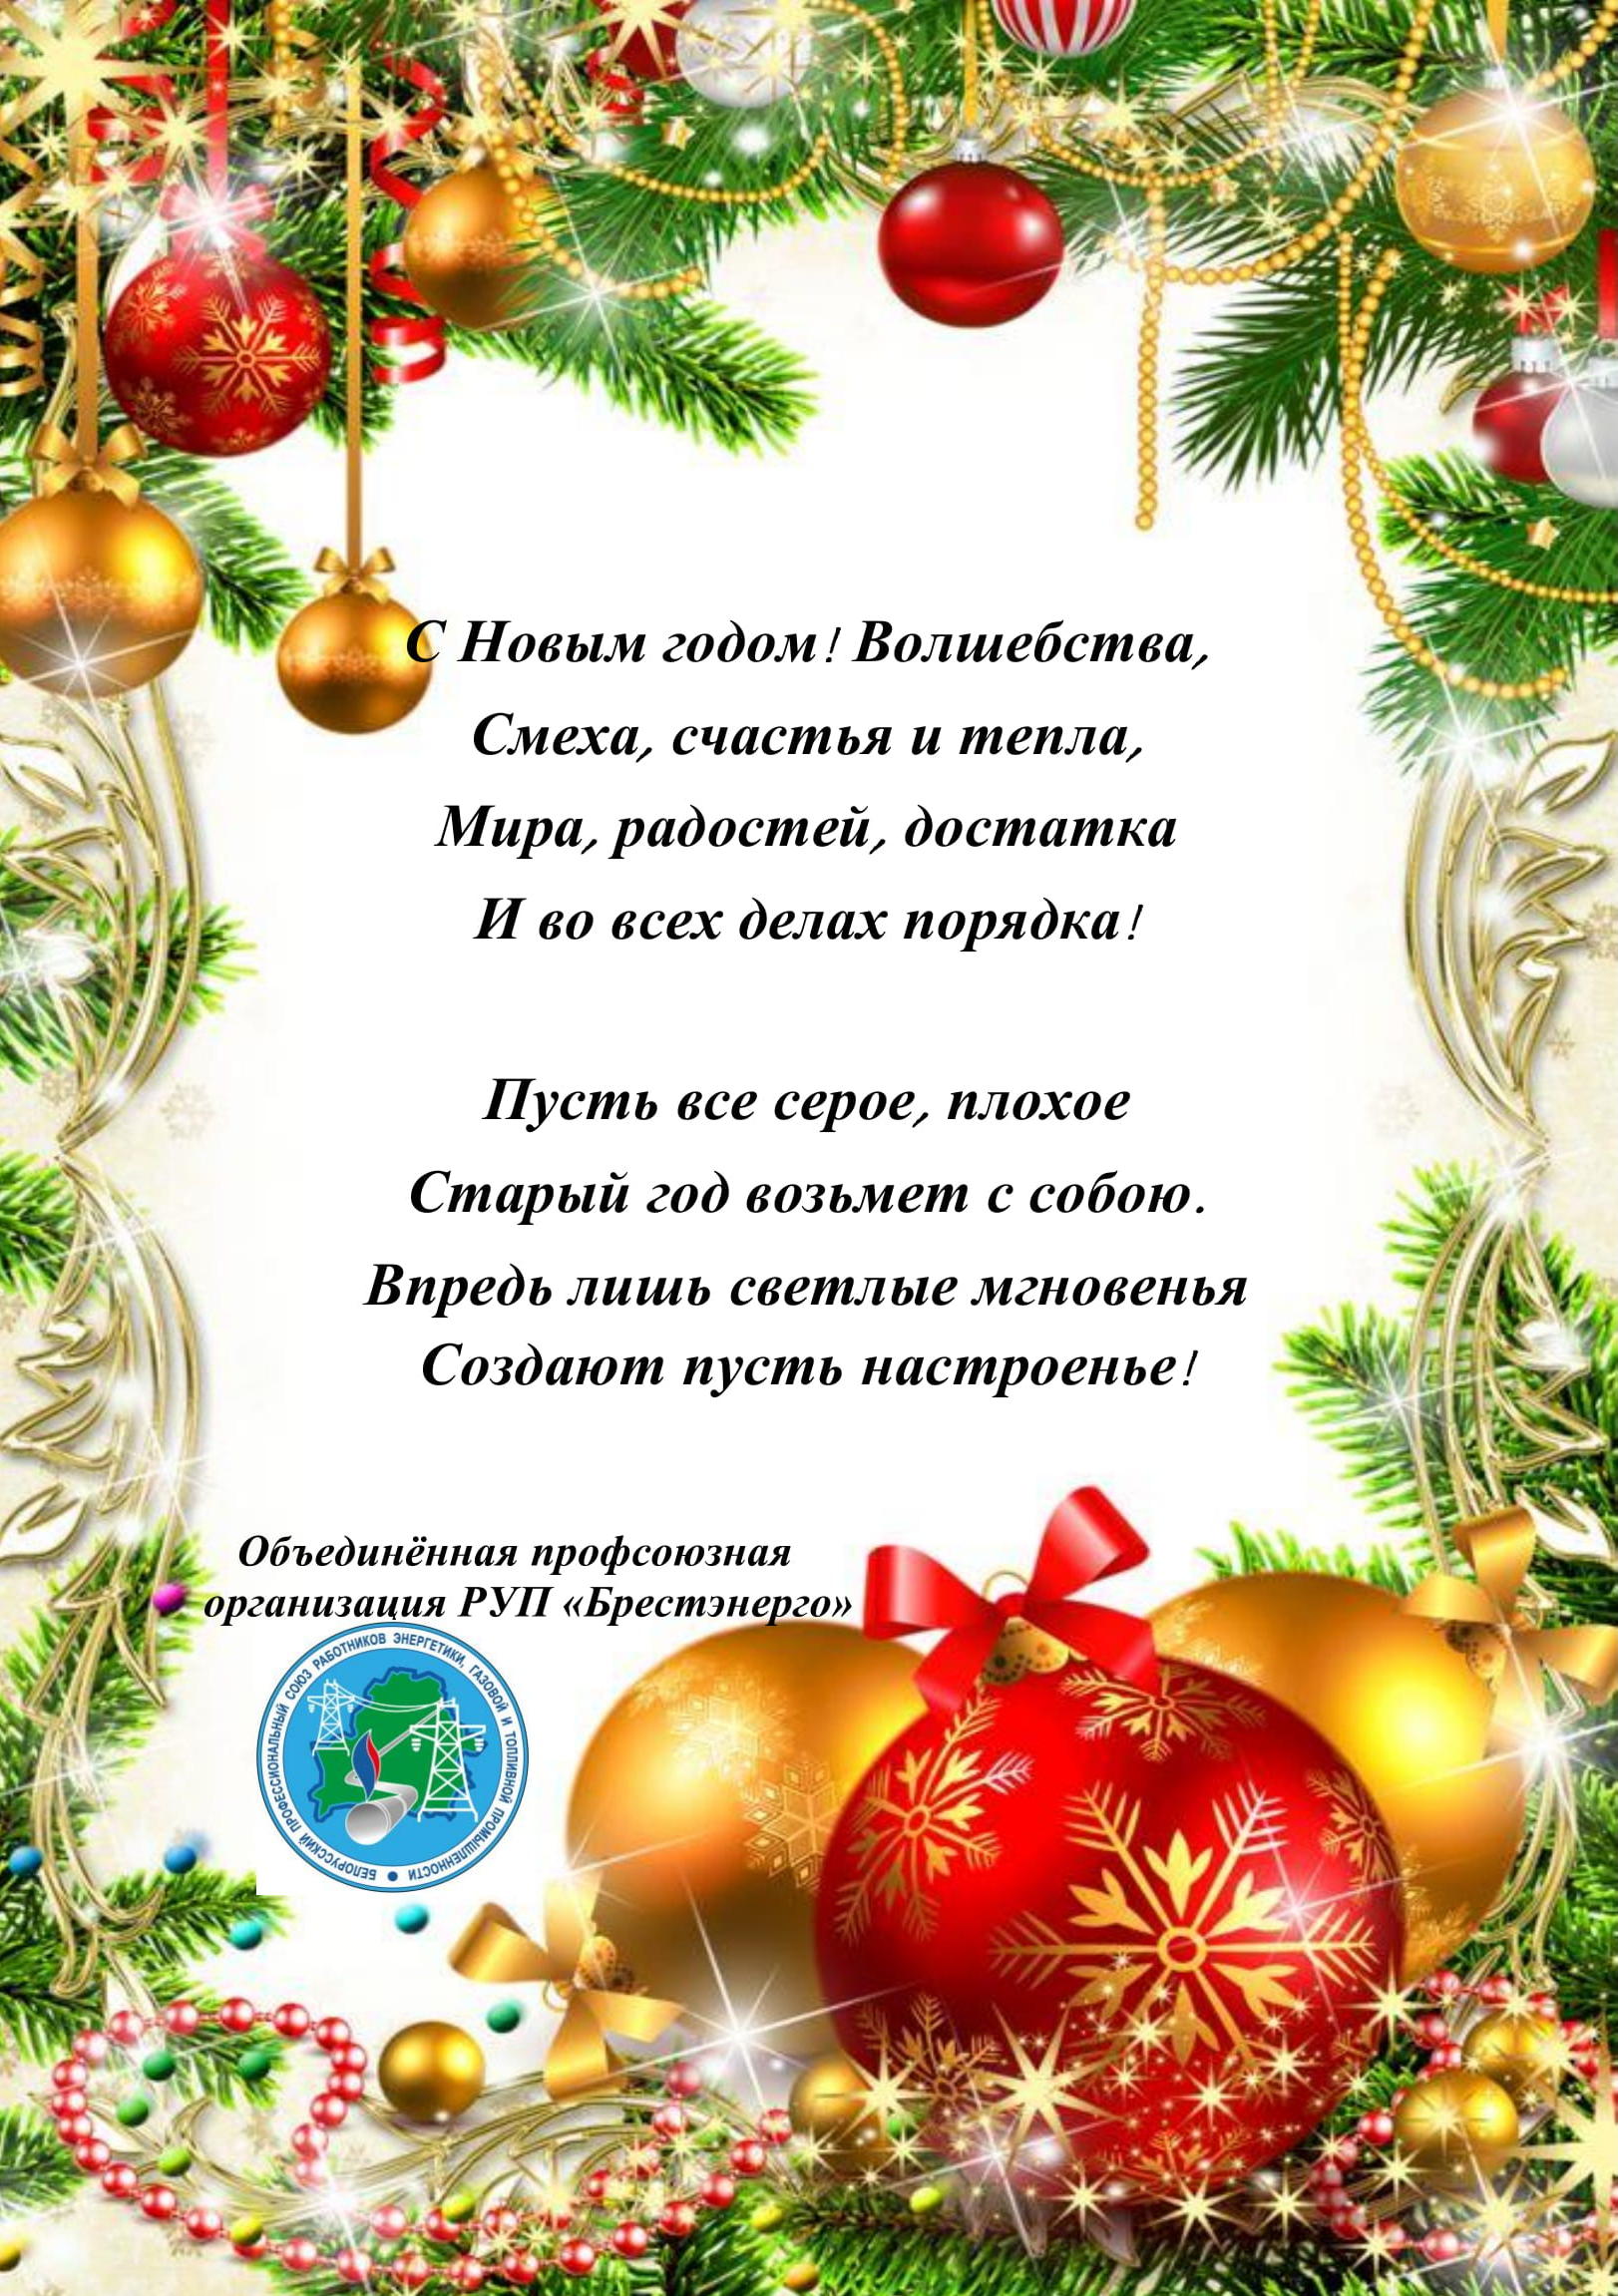 Объединённая профсоюзная организация РУП "Брестэнерго" поздравляет коллектив с Новым годом!